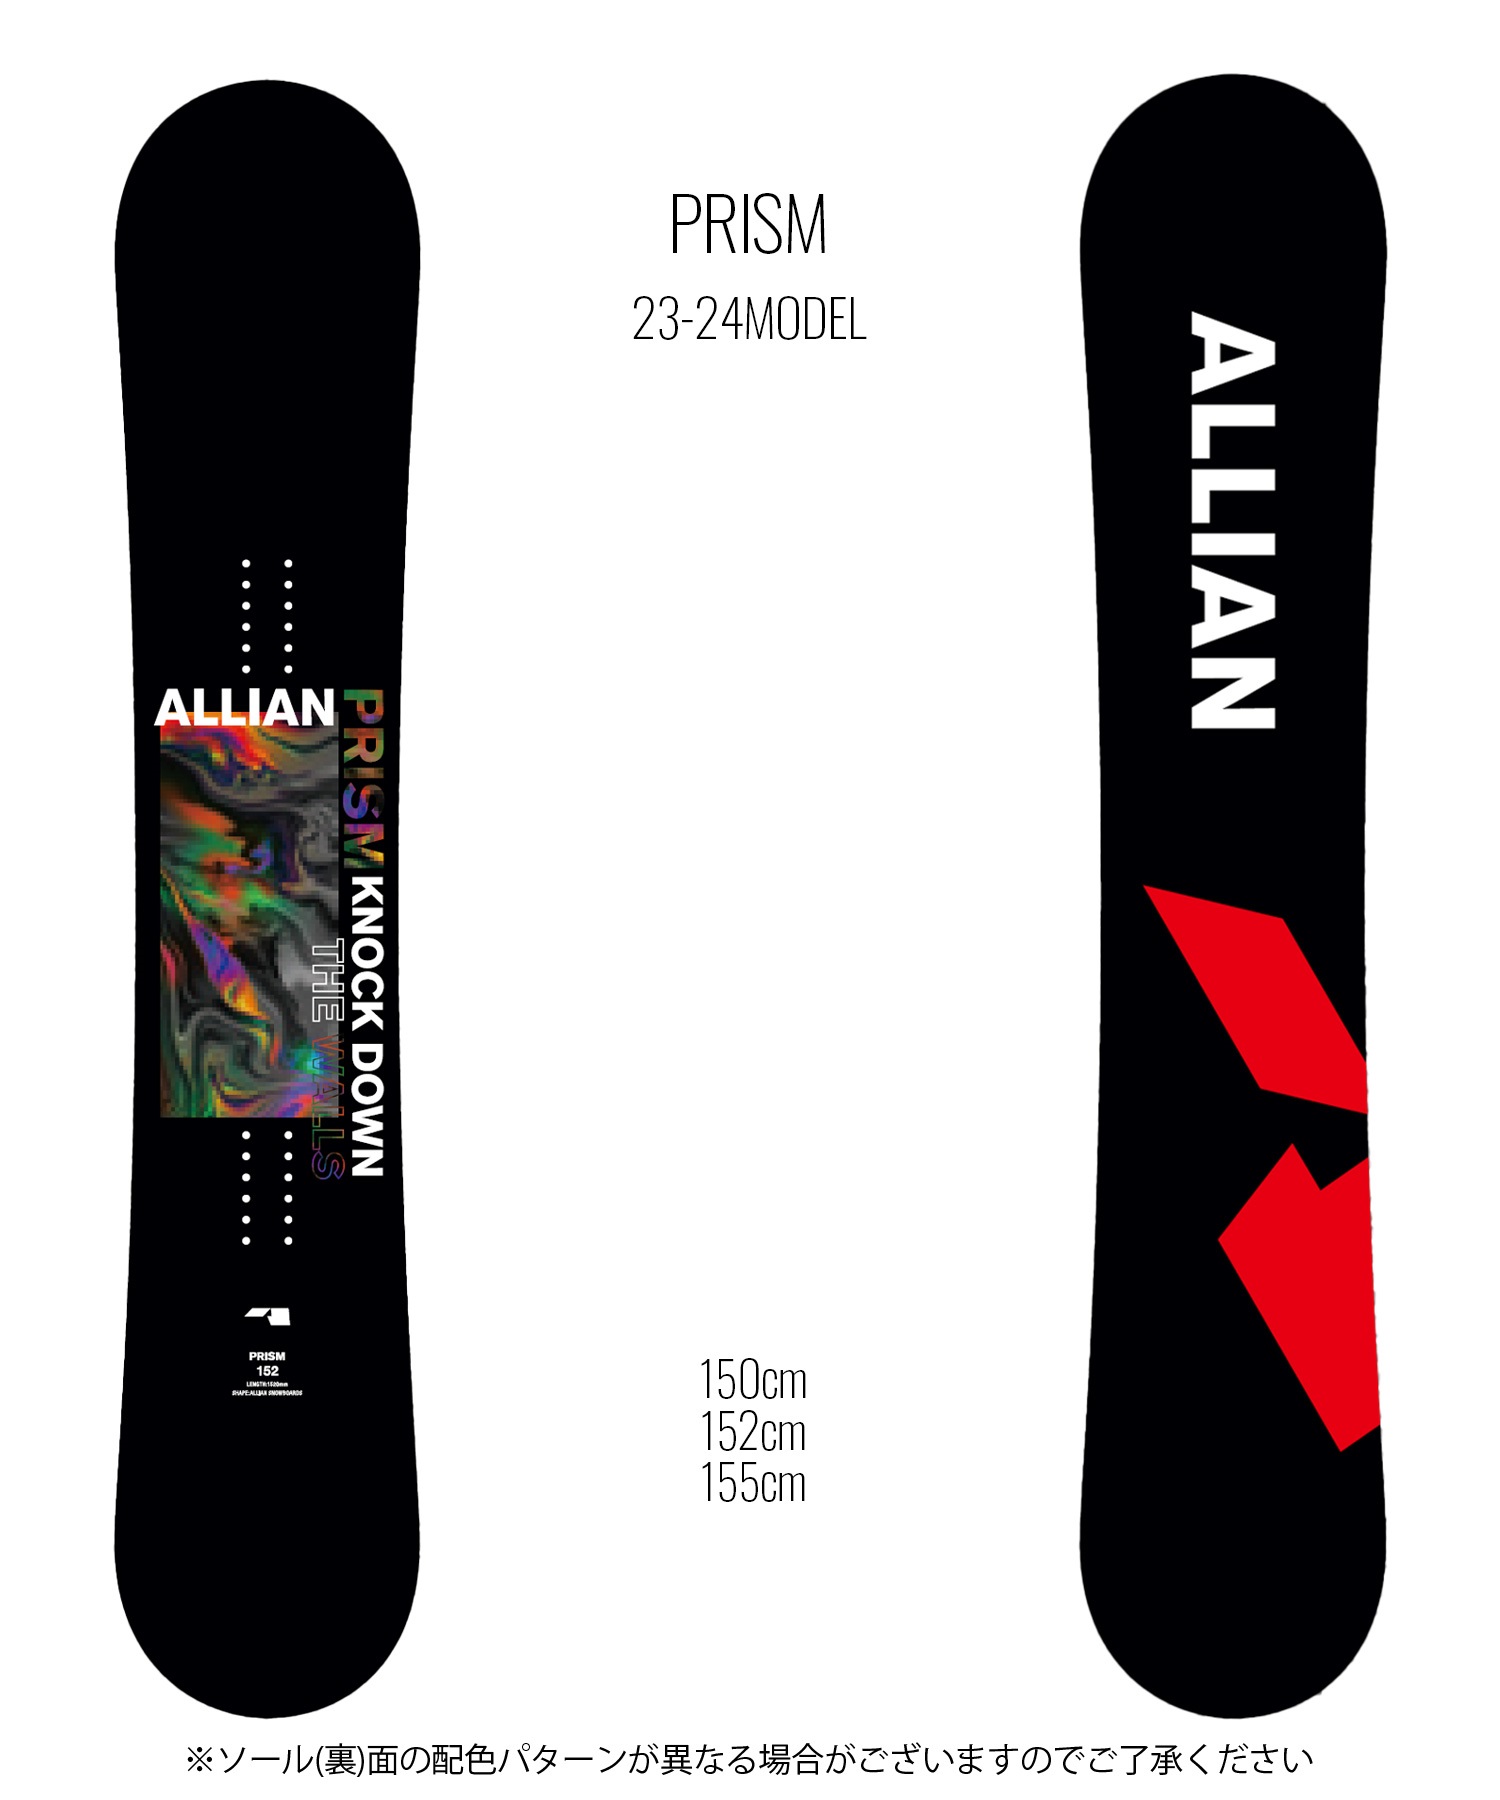 スノーボード 板 メンズ ALLIAN アライアン PRISM 23-24モデル ムラサキスポーツ KK F15(BK-150cm)